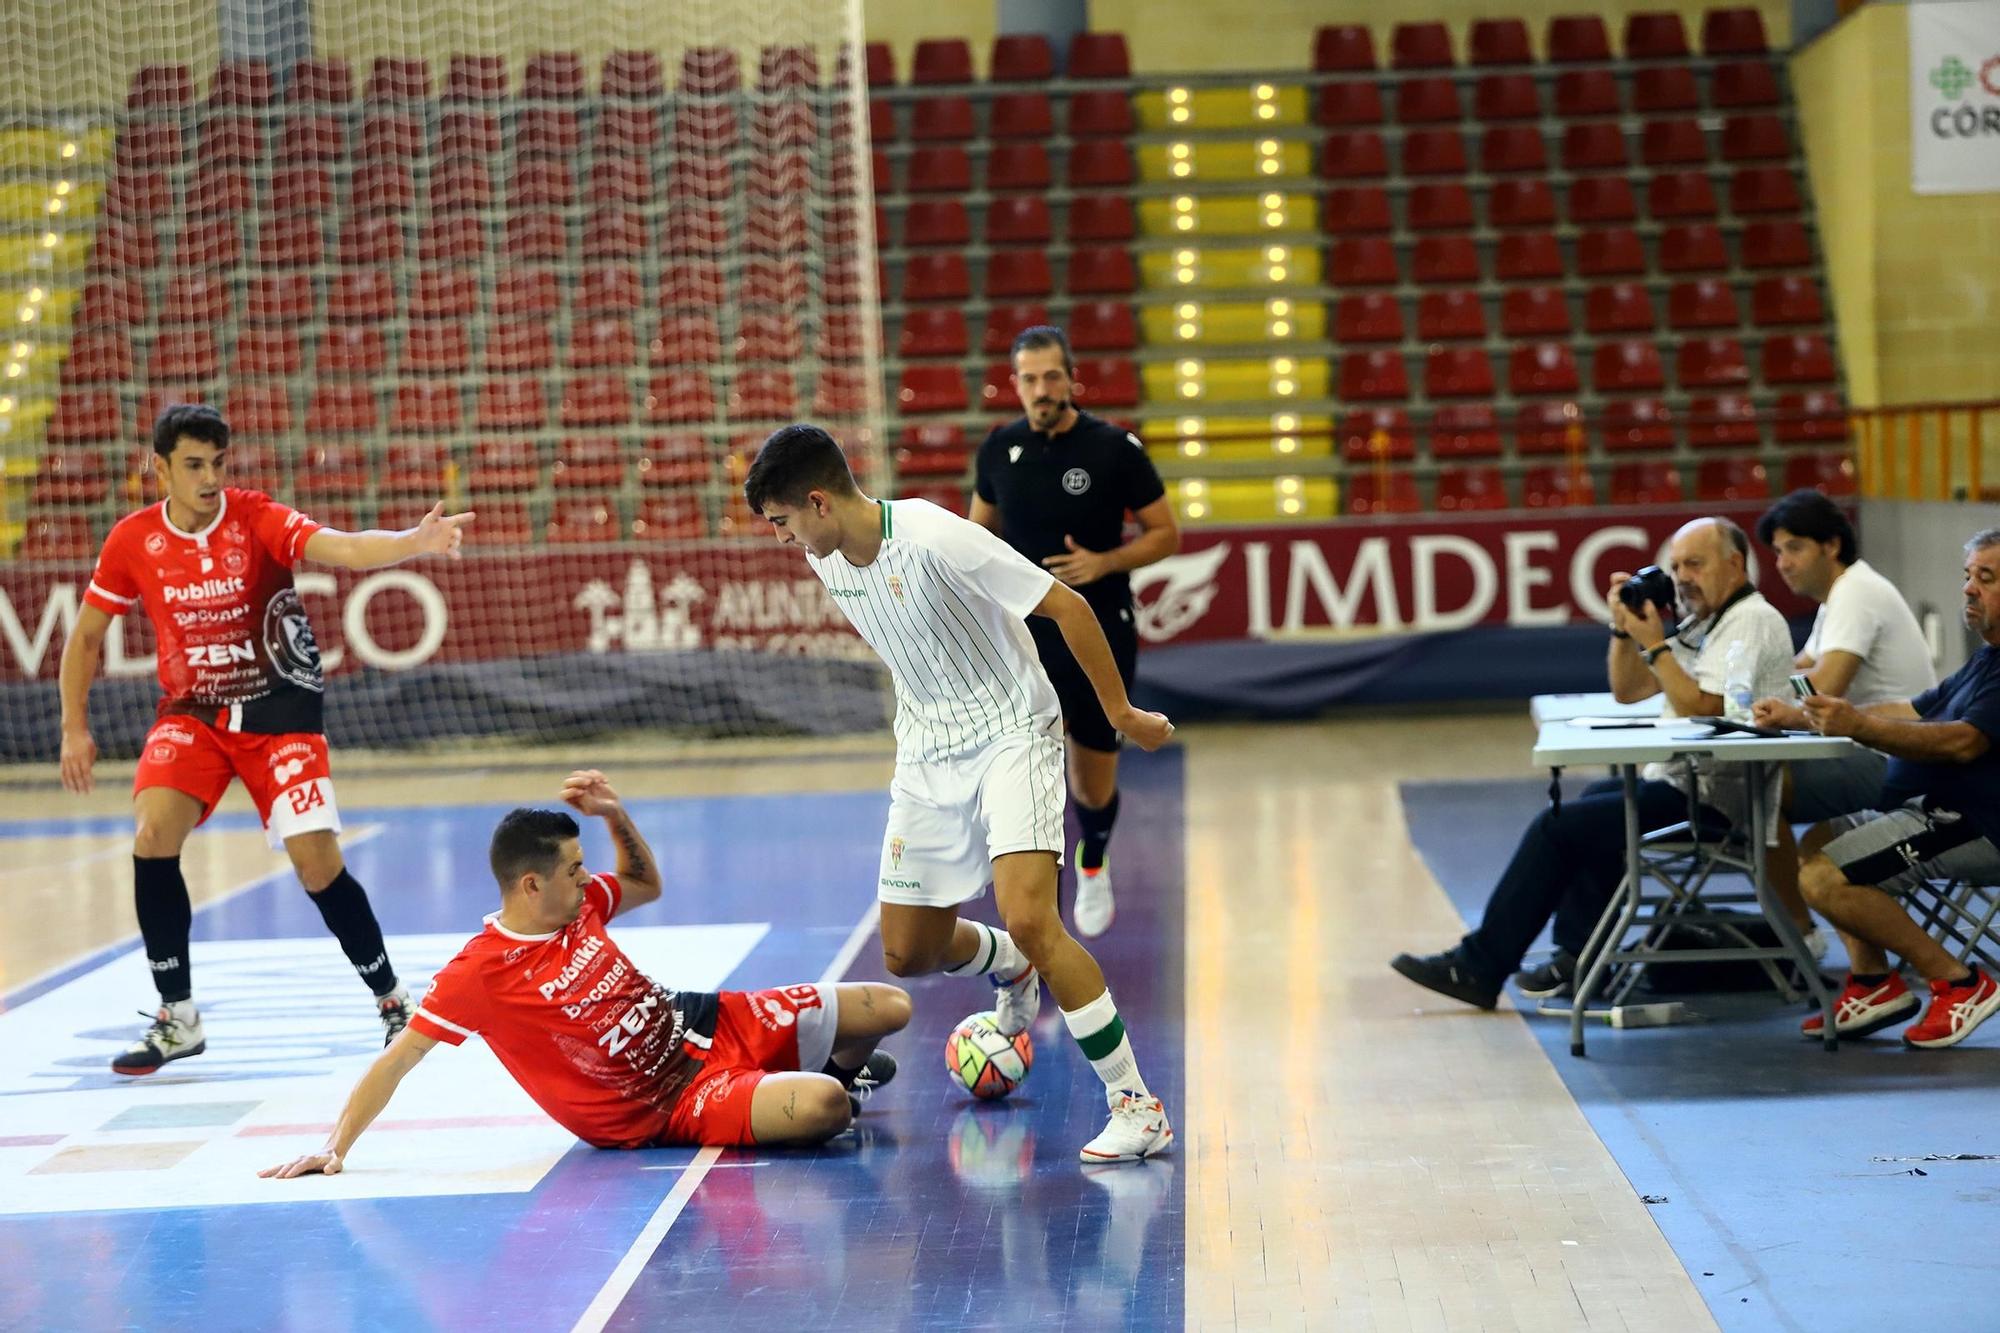 El derbi Córdoba Futsal B - Beconet Bujalance, en imágenes